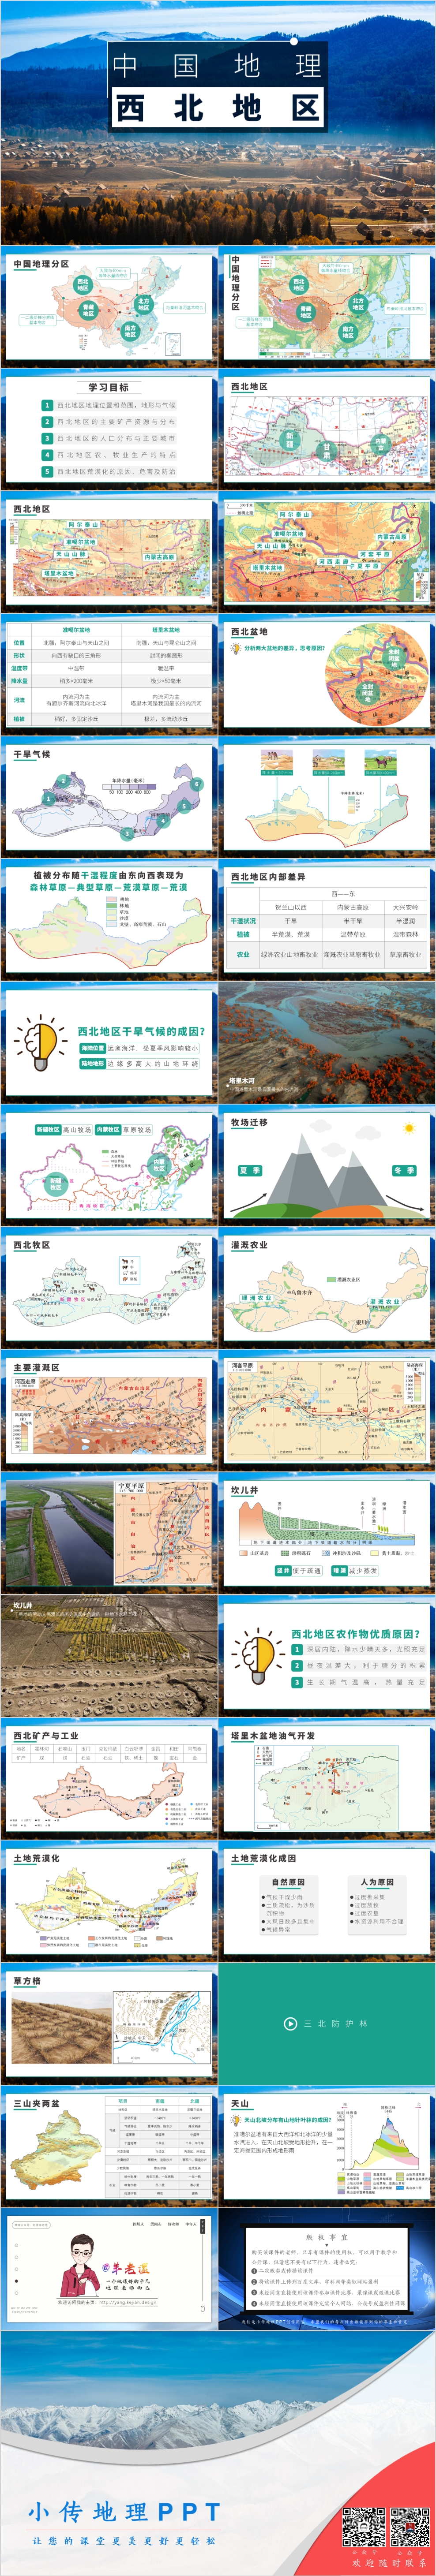 中国地理-西北地区.jpg